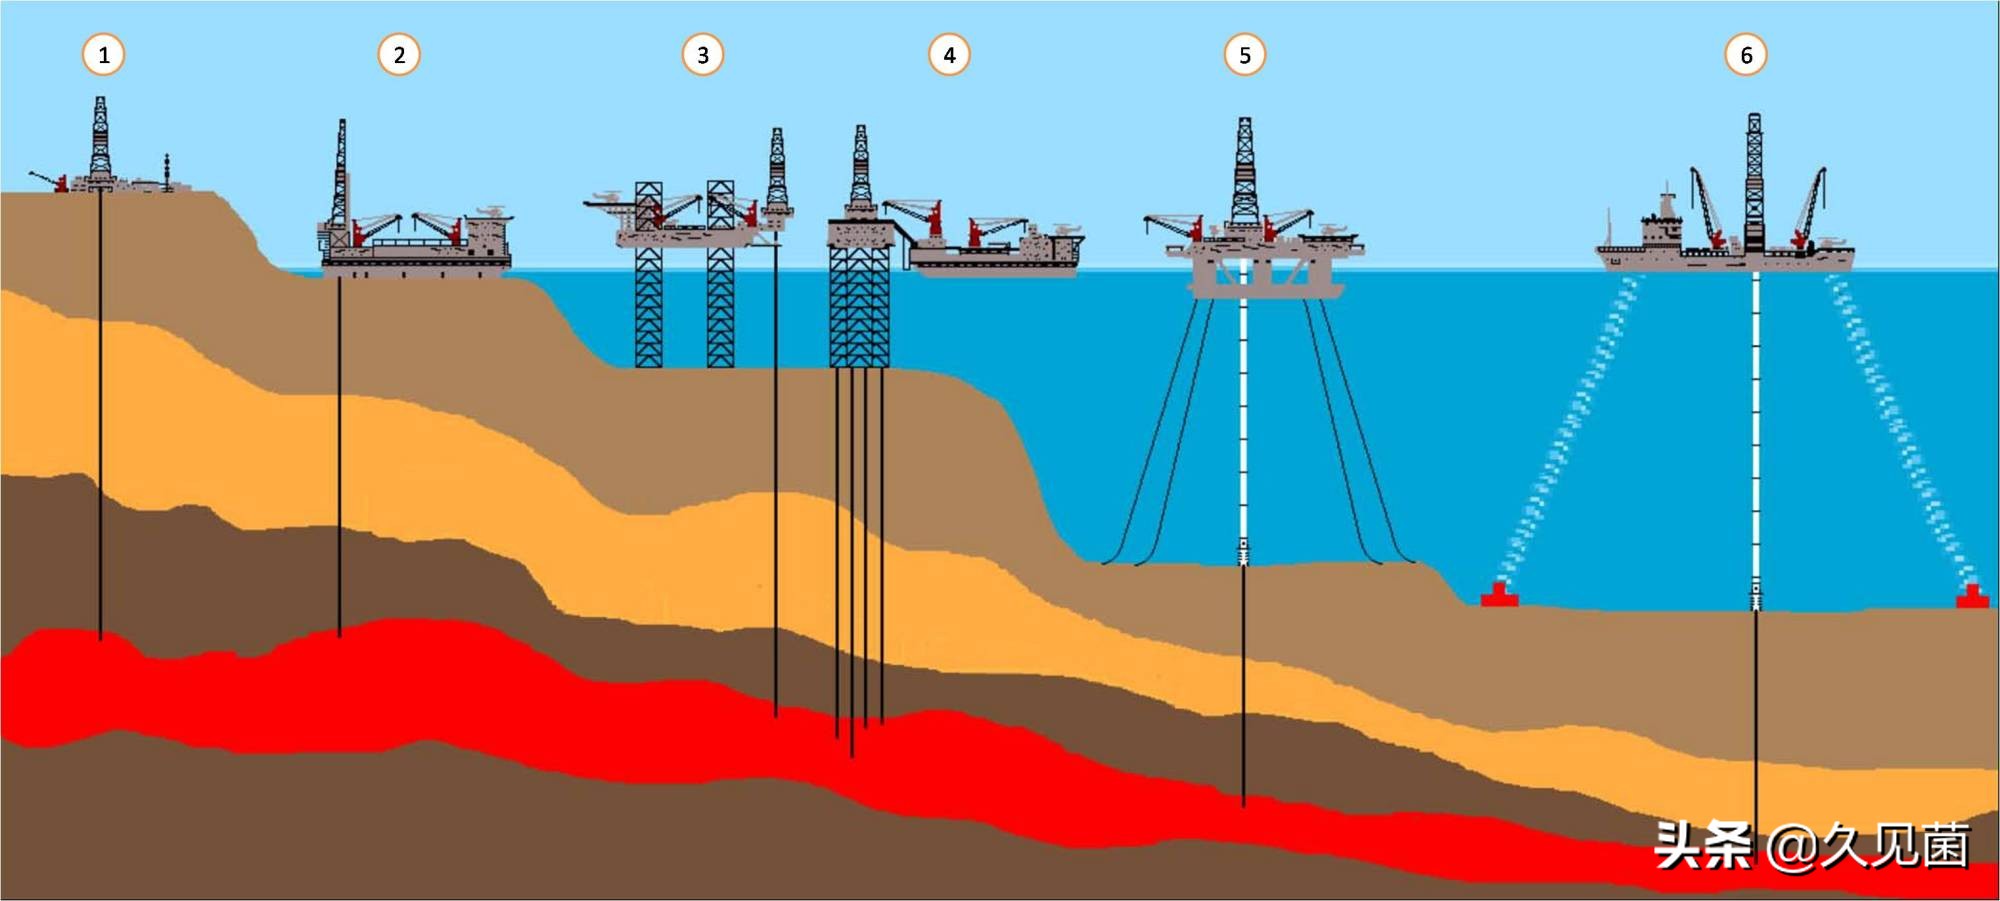 石油是可再生能源？沙特阿拉伯的石油资源，为何源源不断？